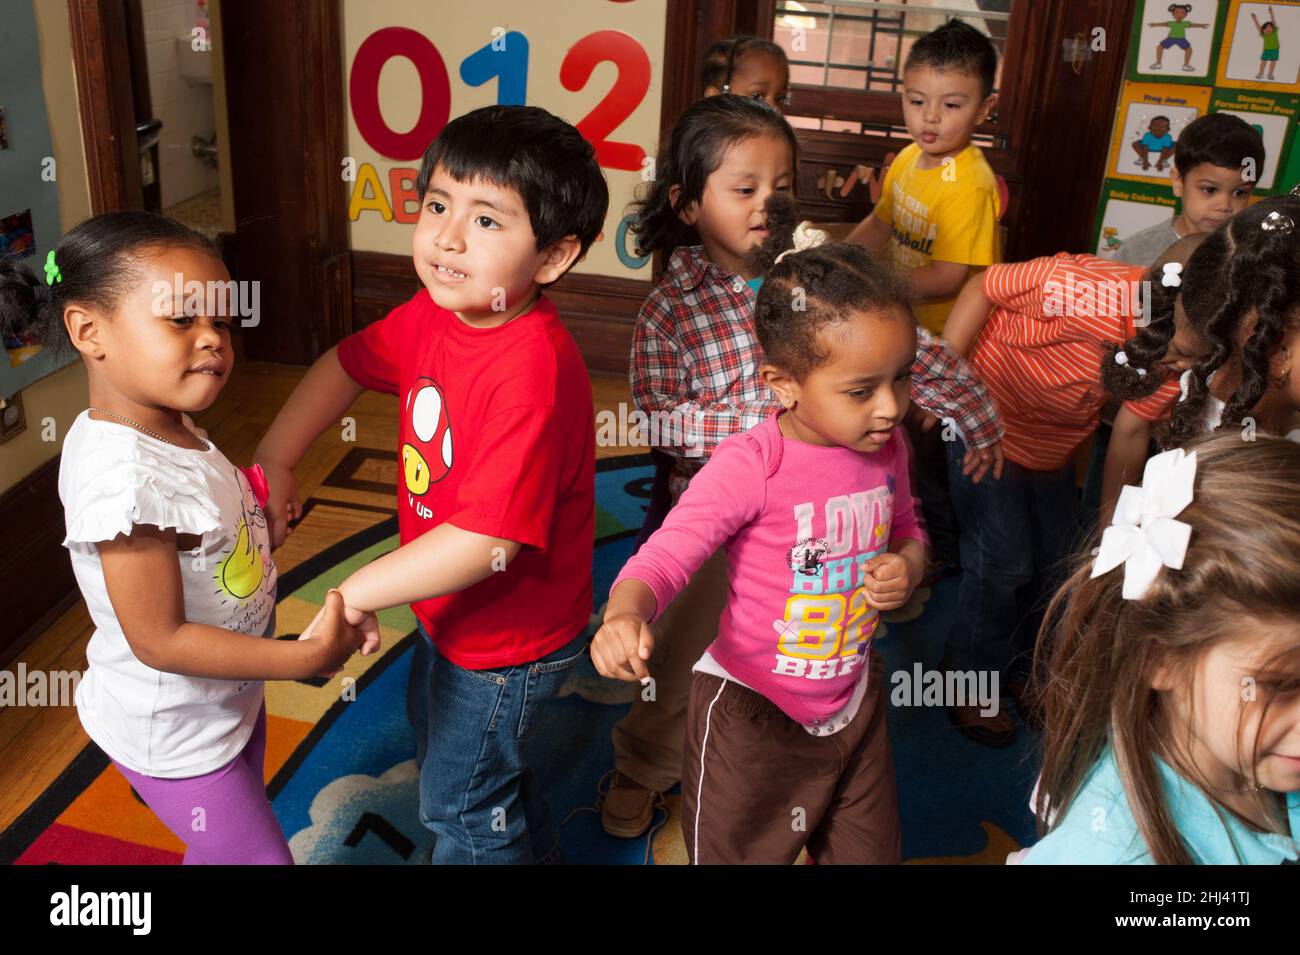 Educación Preescolar Grupo de niños y niñas de 3-4 años bailando con música Foto de stock